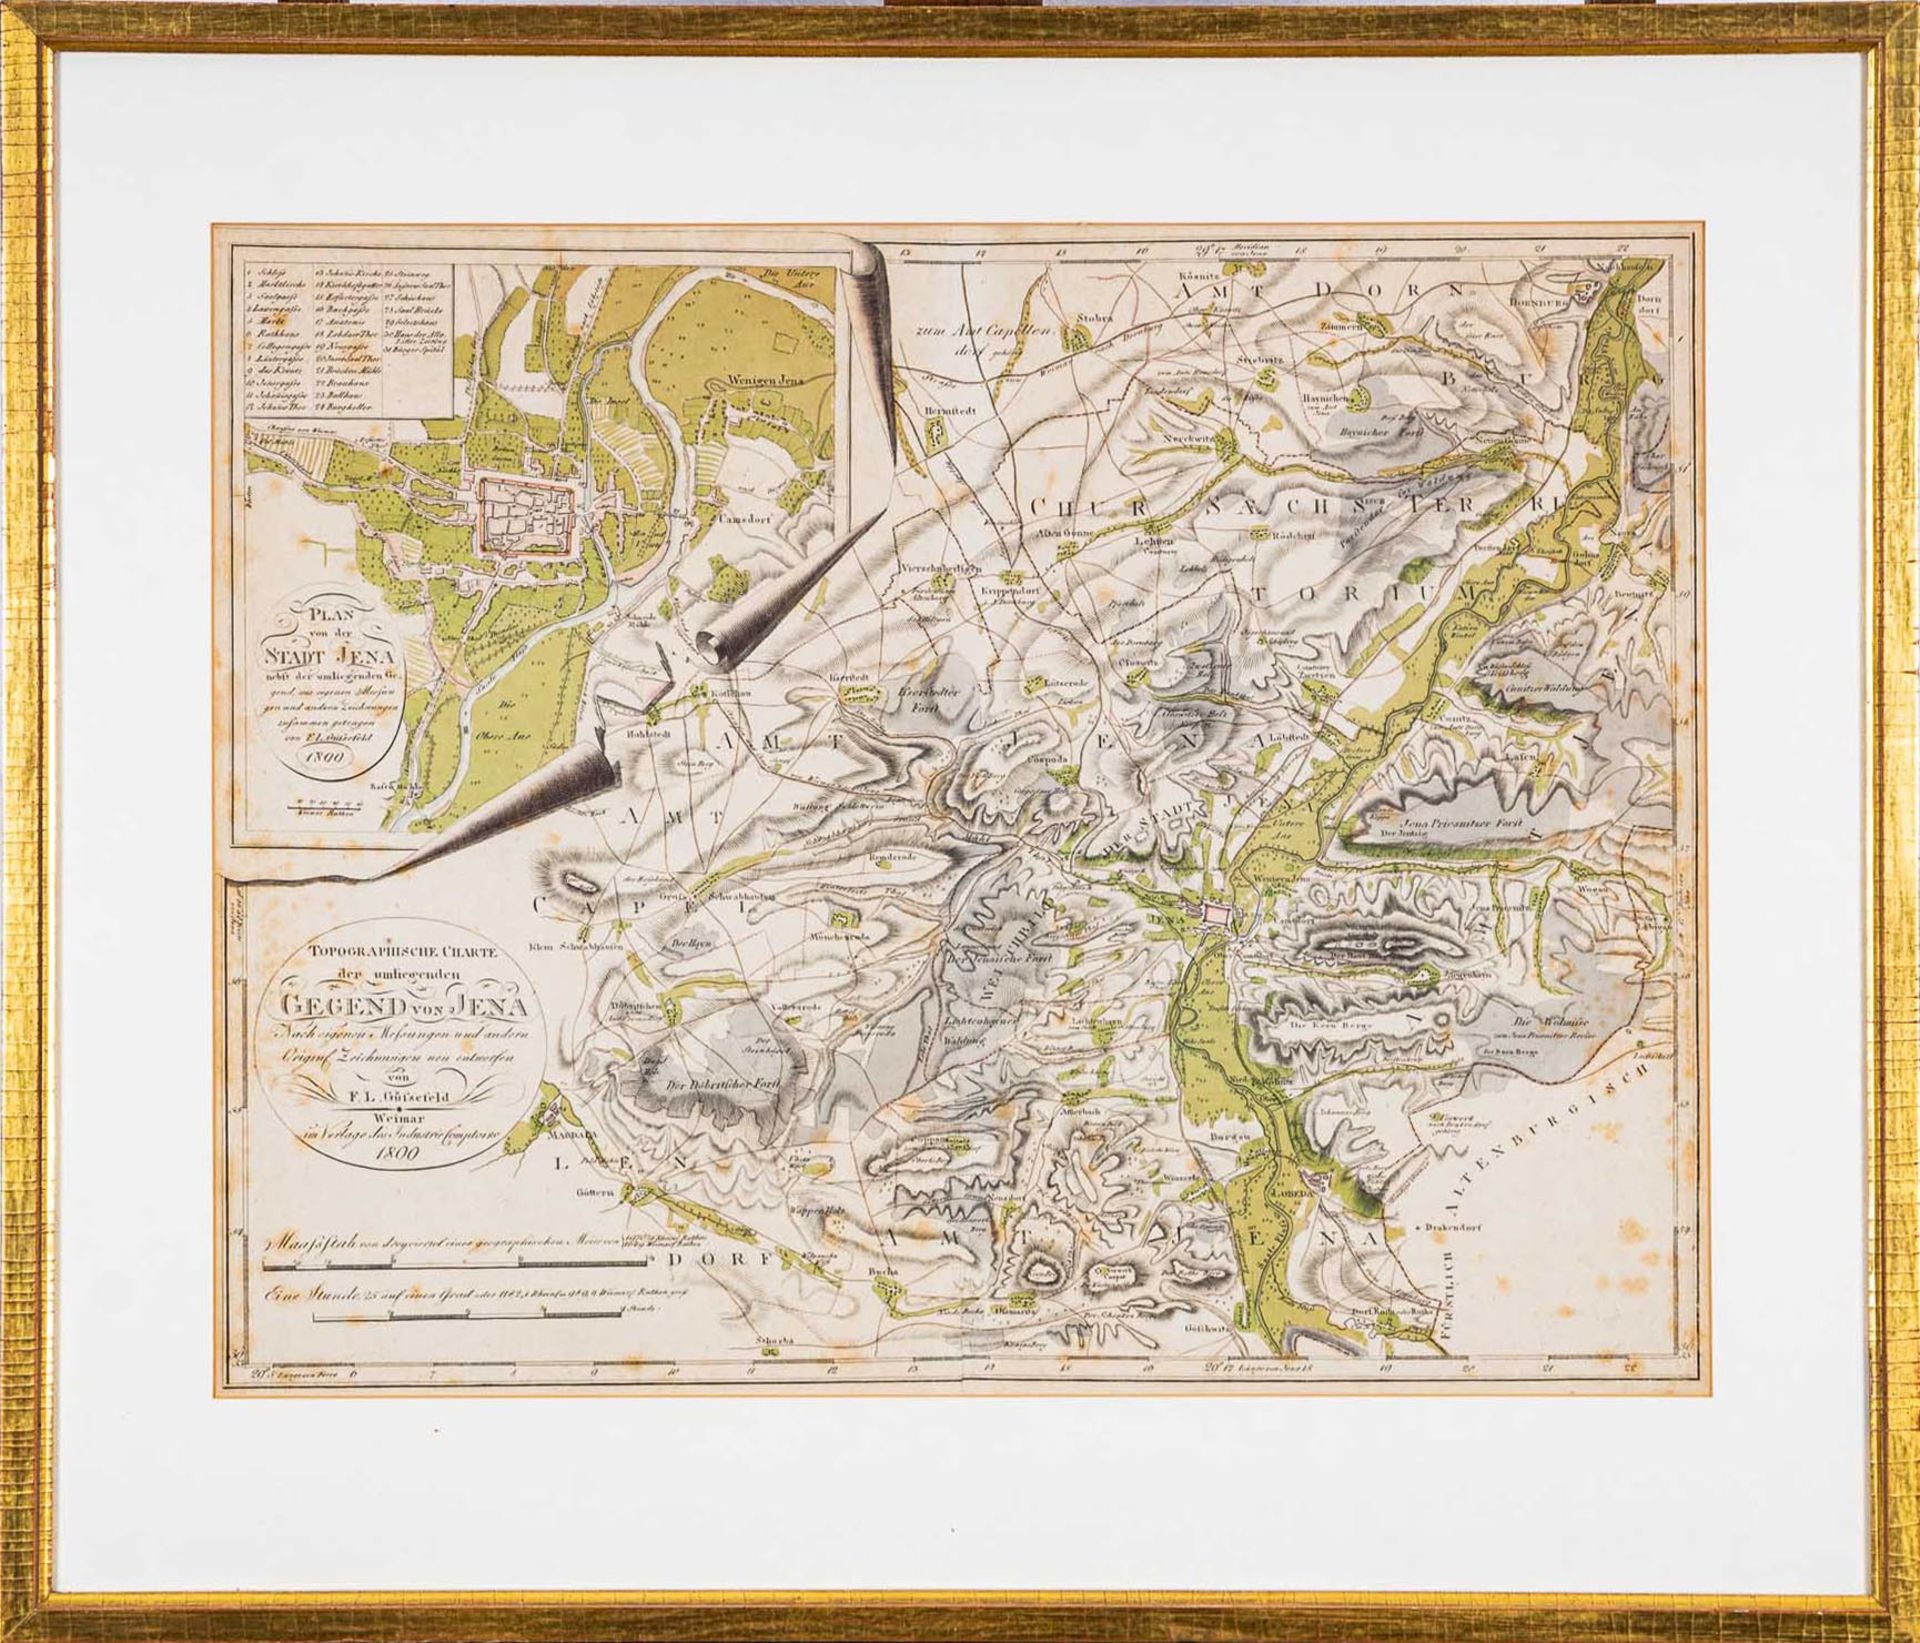 "Plan von der Stadt Jena....1800", teilkolorierter, hinter Glas gerahmter Stadt